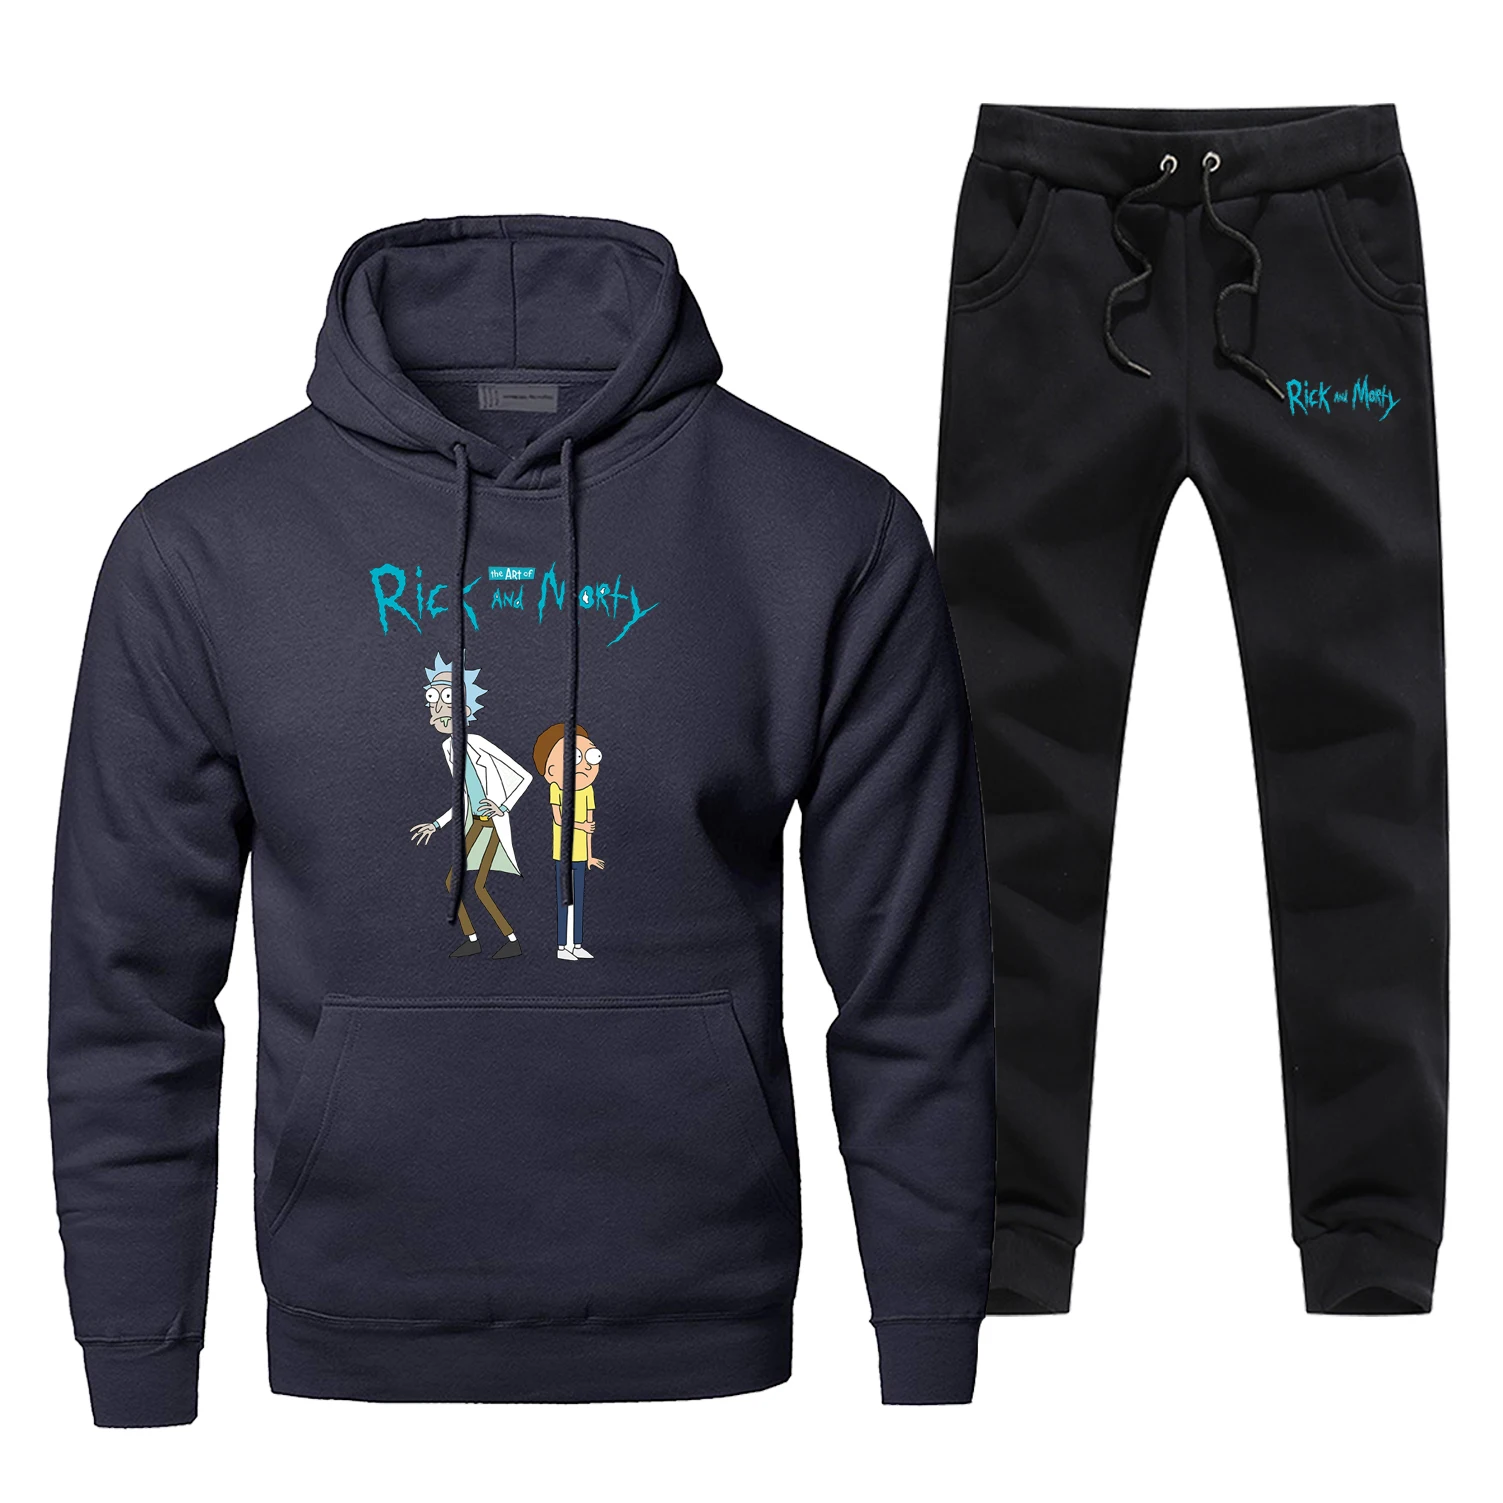 Мужские комплекты с принтом Рика и Морти, популярные брюки в стиле аниме, толстовка, модные флисовые толстовки, толстовка, дешевый комплект из 2 предметов, теплая уличная одежда - Цвет: Dark Blue